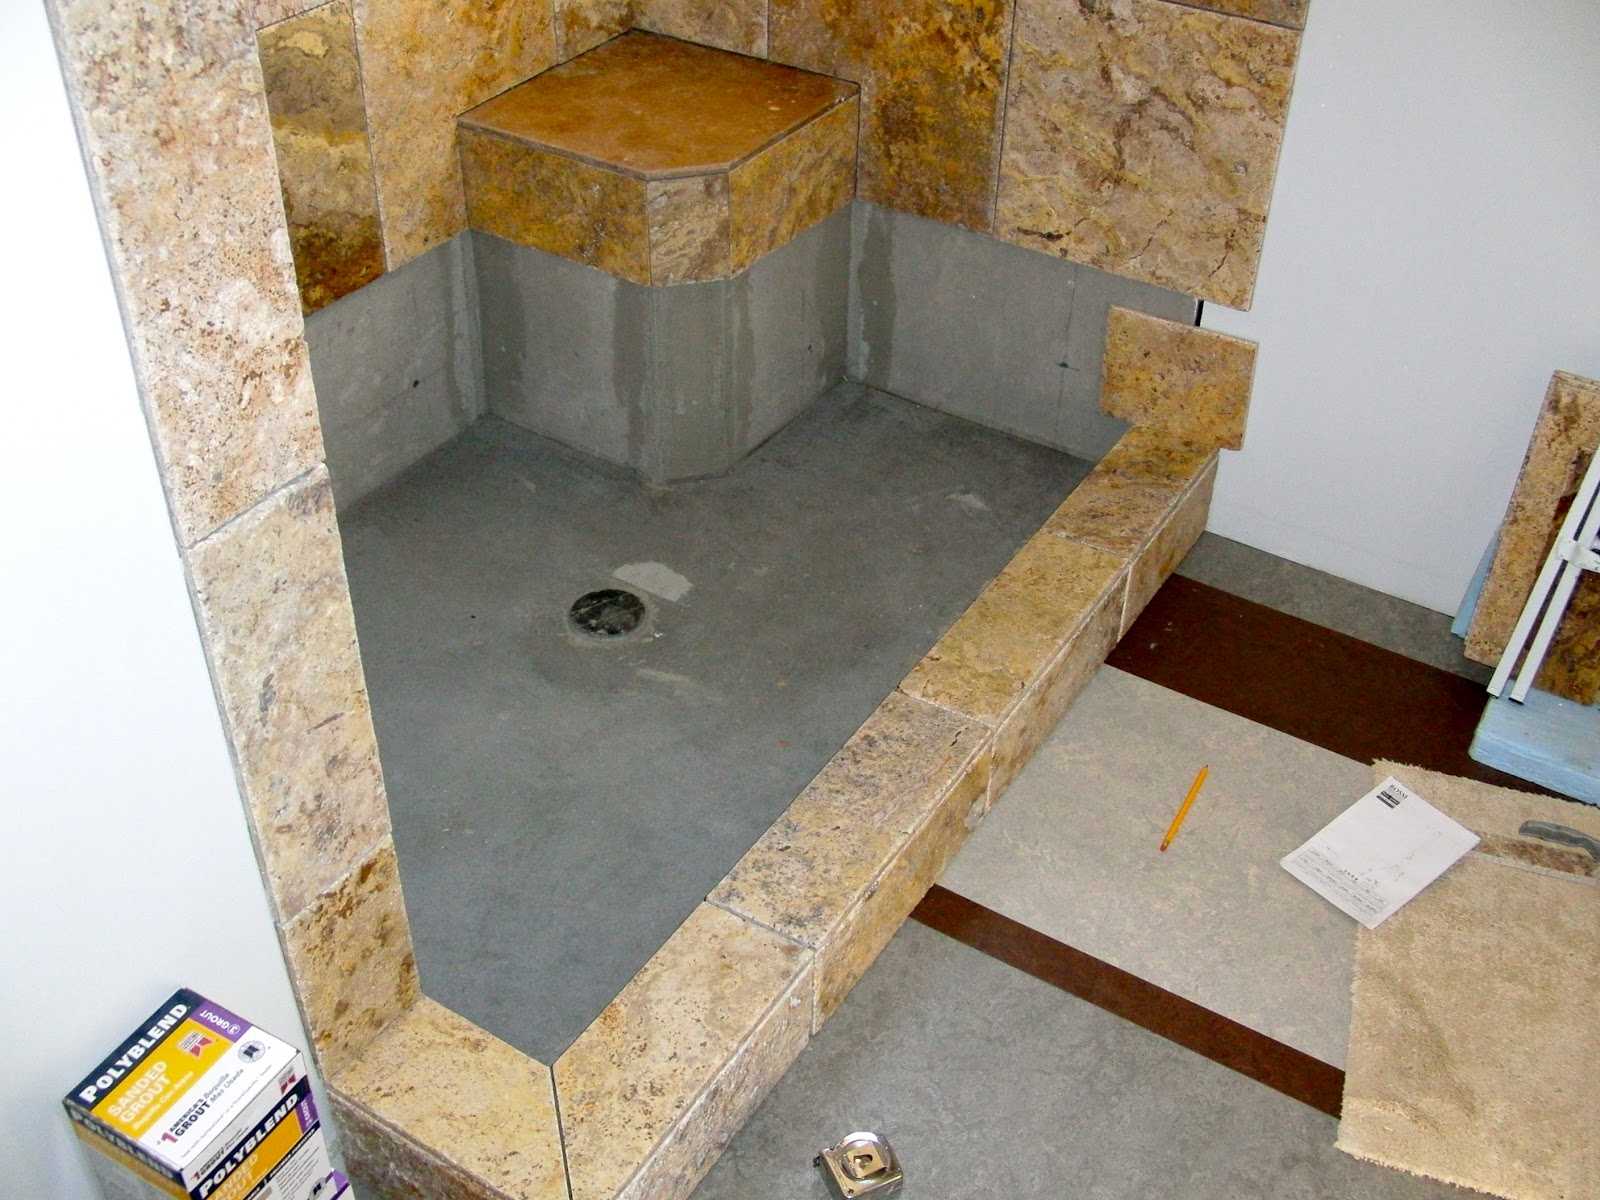 Душевая кабина без поддона - тренд ванной 2020 - 2021 года (+44 фото) | дизайн и интерьер ванной комнаты